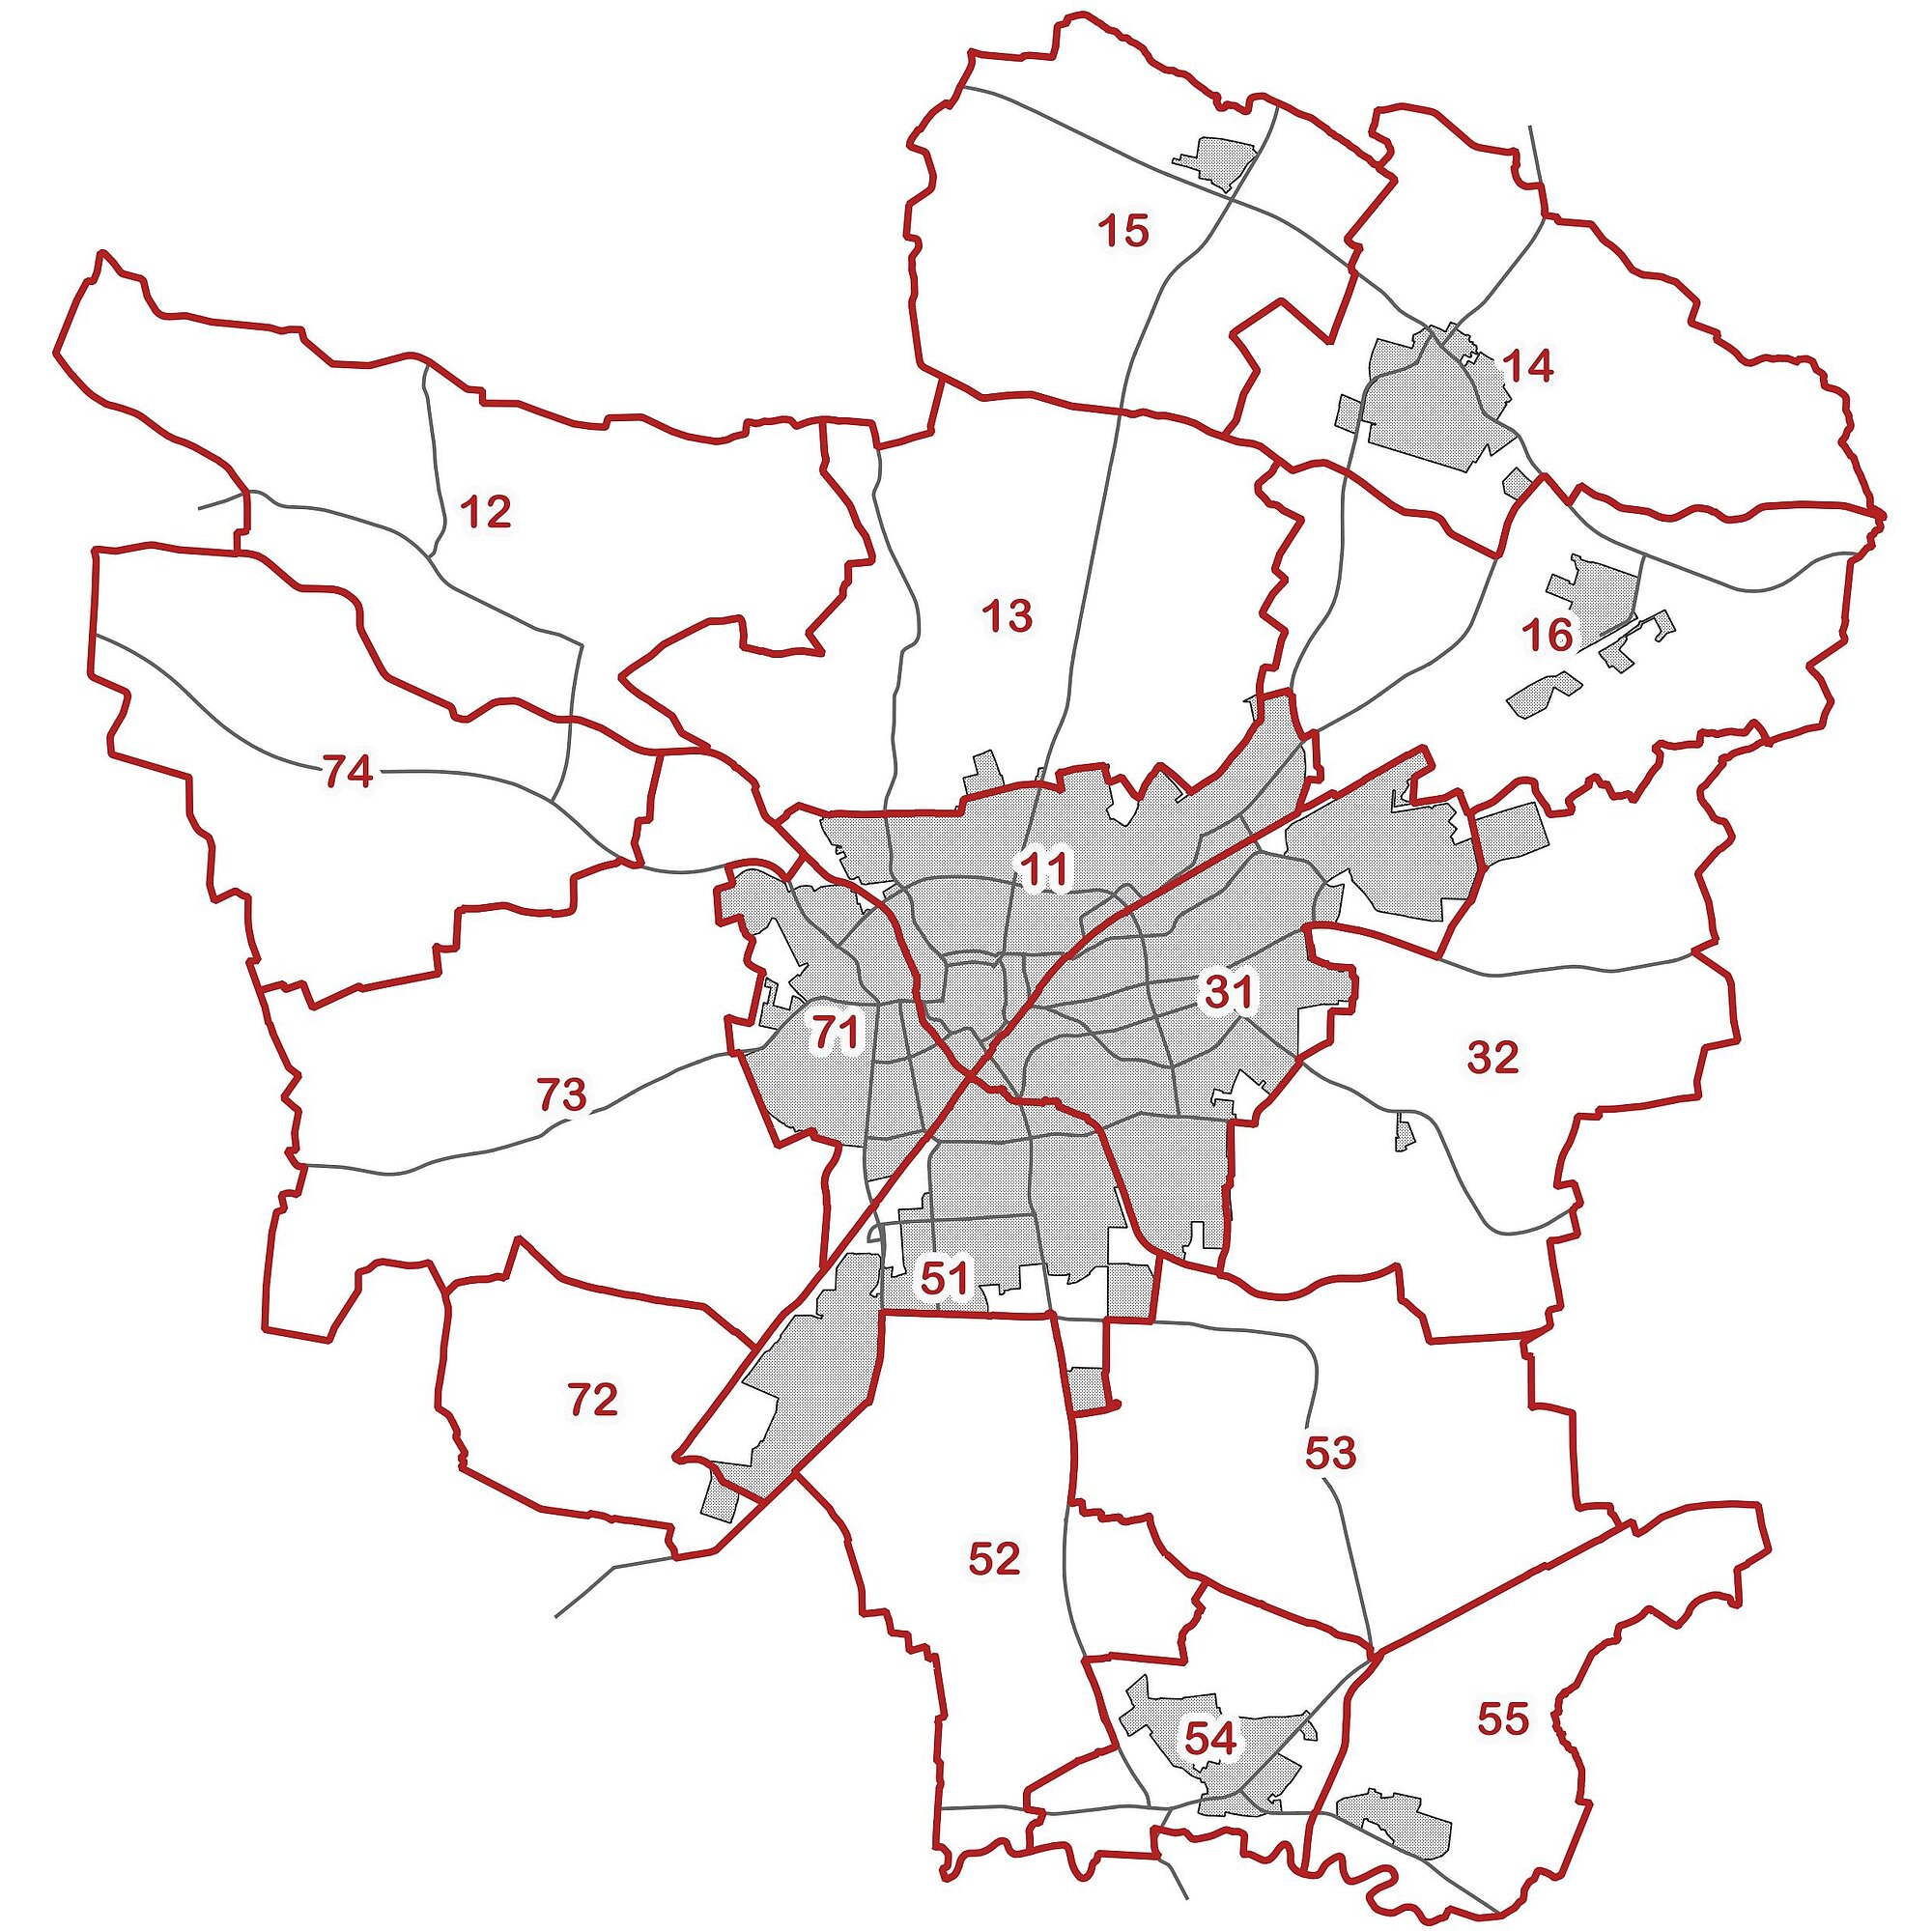 Grafik: Karte von Ahlen mit der Einteilung in statistische Bezirke